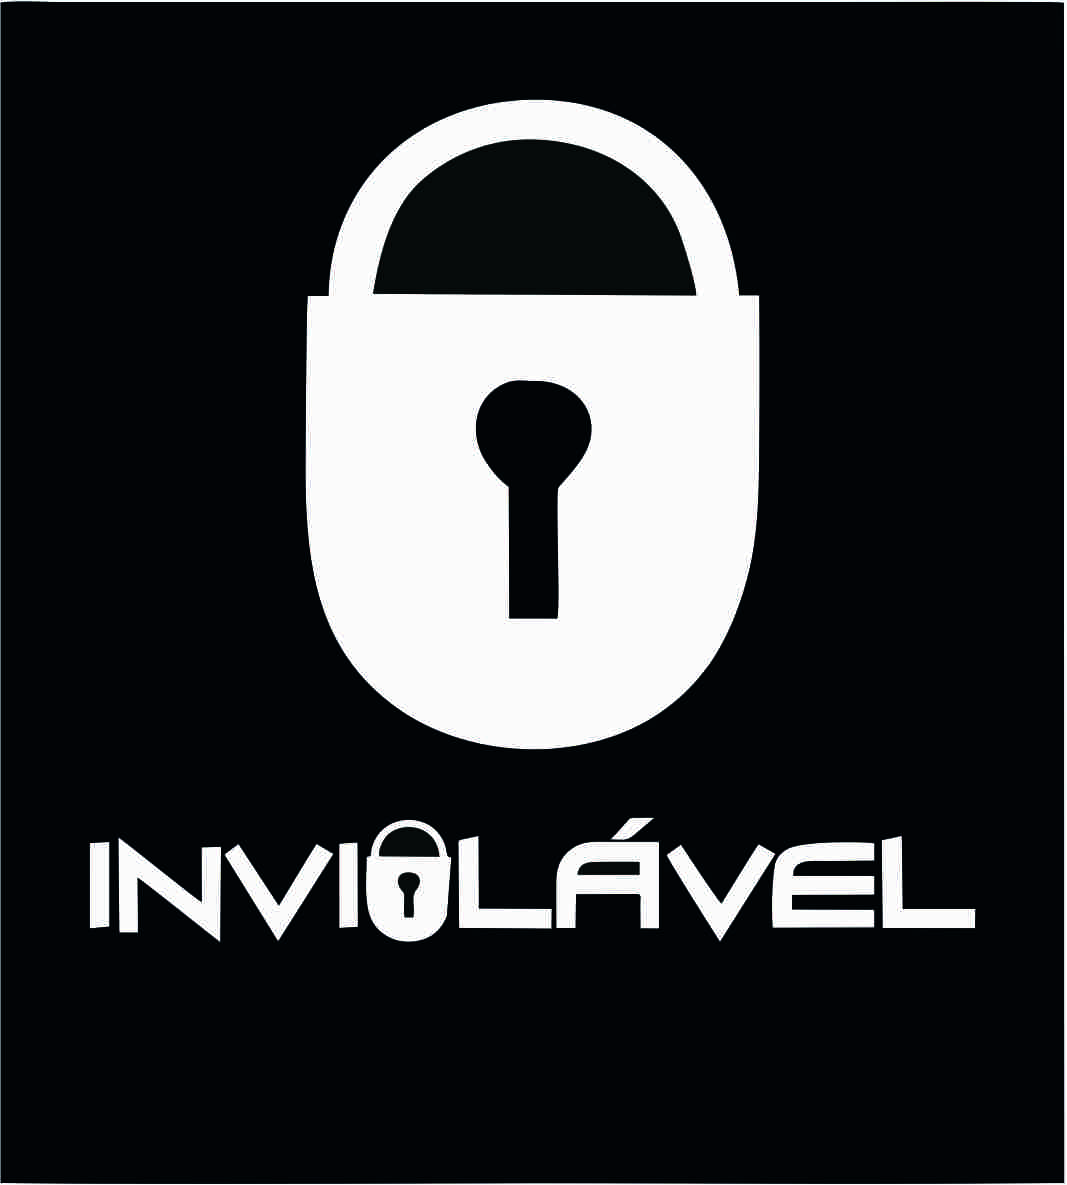 Inviolvel